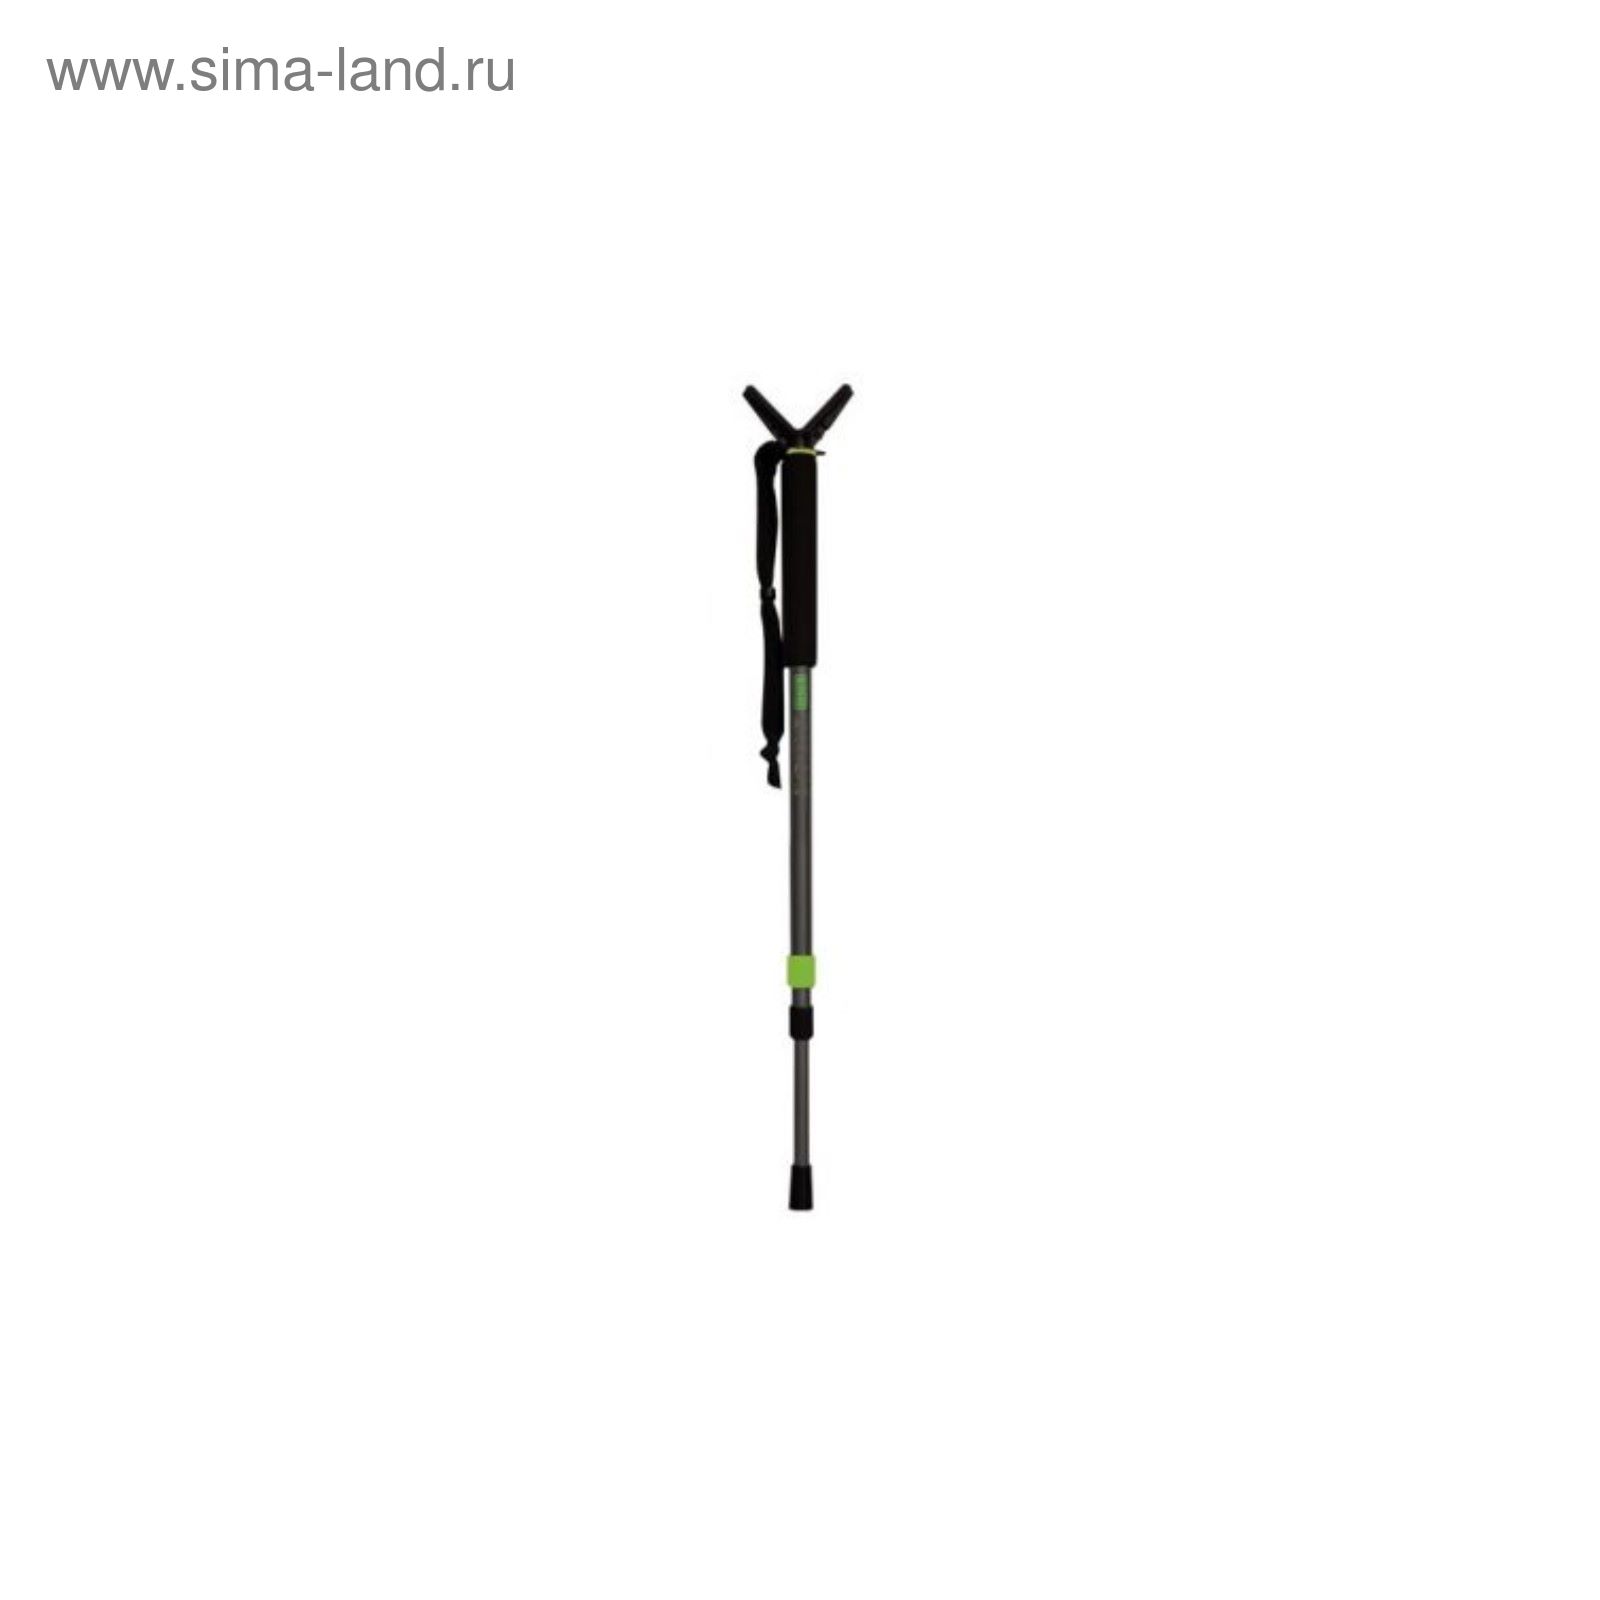 Опора для ружья Primos PoleCat™ 1 нога, 3 секции, 64-157 см